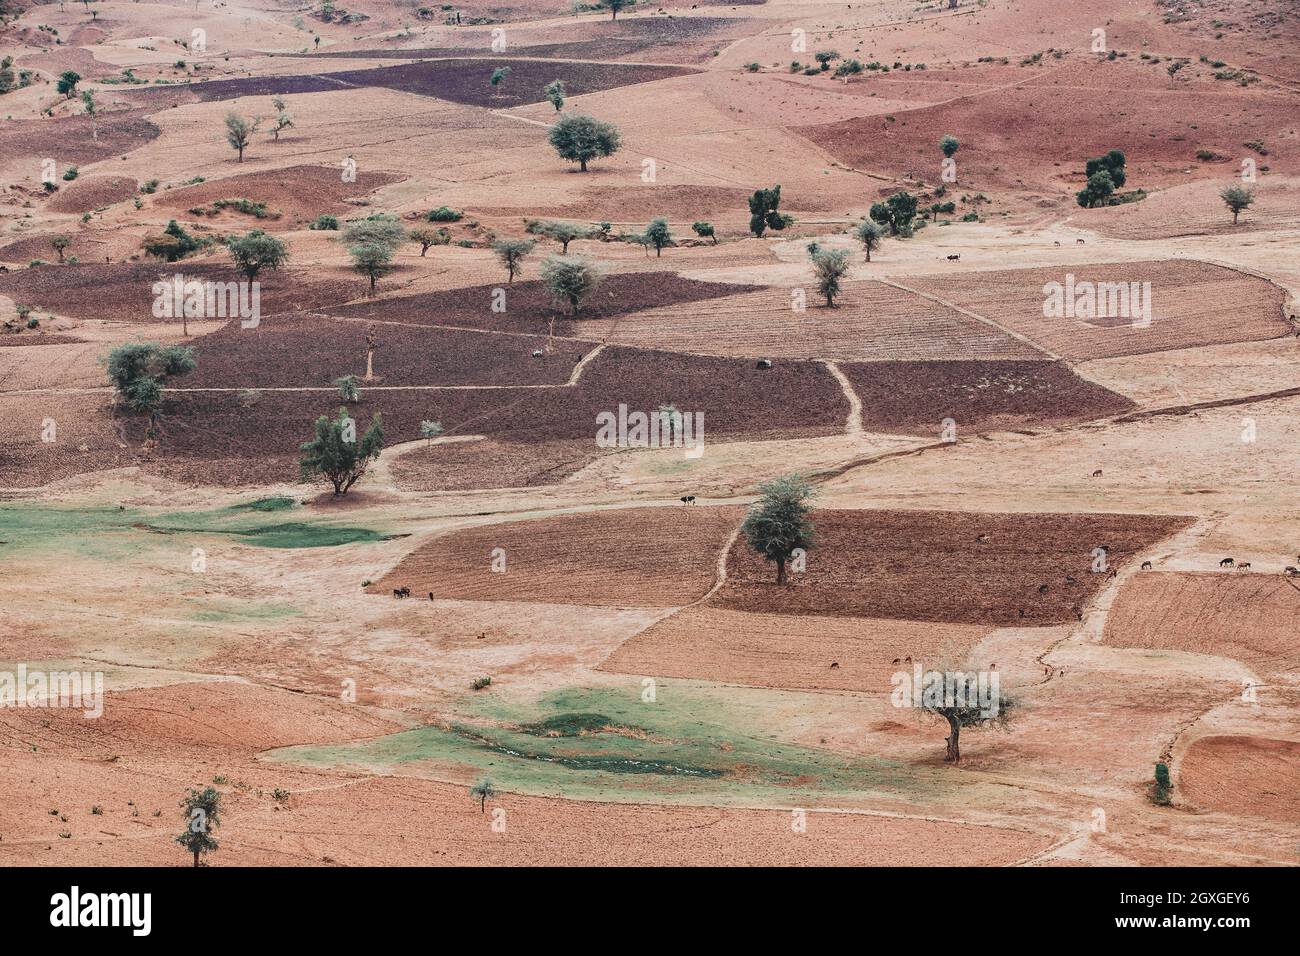 Schöne landwirtschaftliche Landschaft mit traditionellen äthiopischen Feldern in der Nähe der Stadt Gondar, unter den Ruinen von Guzara Palast. Amhara-Region. Äthiopien, Afrika. Stockfoto